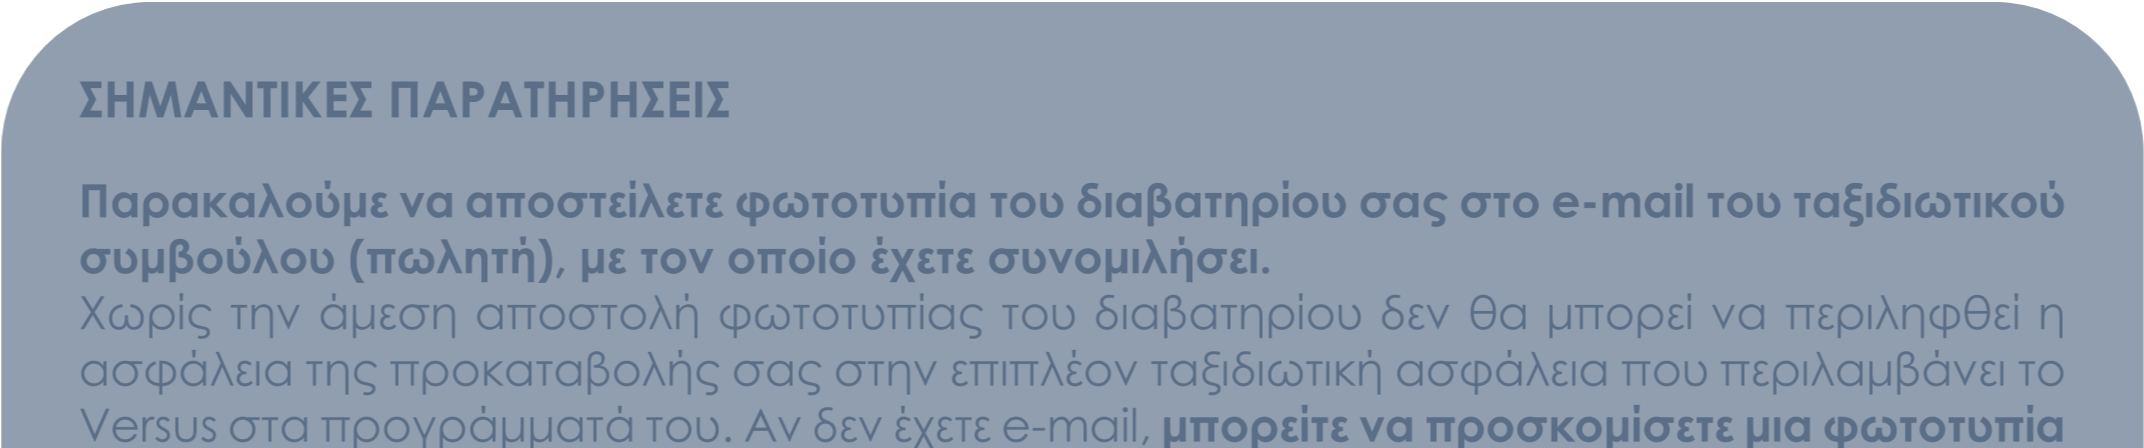 **Αναχωρήσεις από Λάρνακα Στις αναχωρήσεις από Λάρνακα περιλαµβάνονται οι πτήσεις Λάρνακα Αθήνα - Λάρνακα µε AEGEAN & 2 διανυκτερεύσεις στην Αθήνα στο κεντρικό ξενοδοχείο Τιτάνια 4* µε πρωινό και